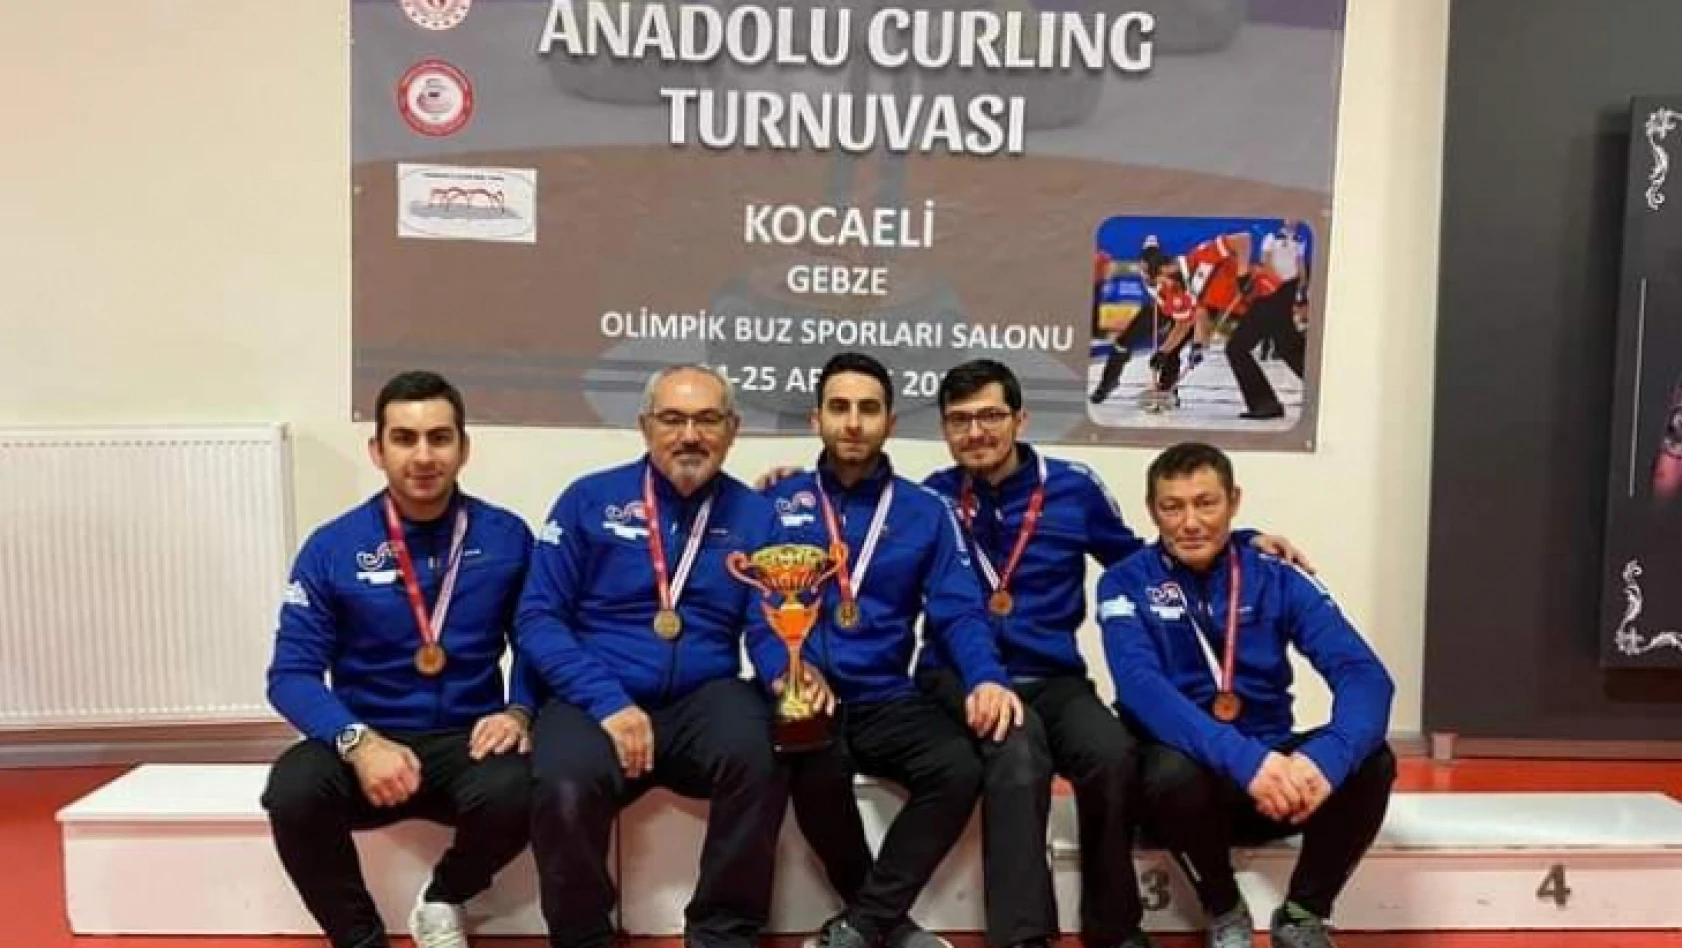 Anadolu Curling Turnuvası ilimizde yapıldı